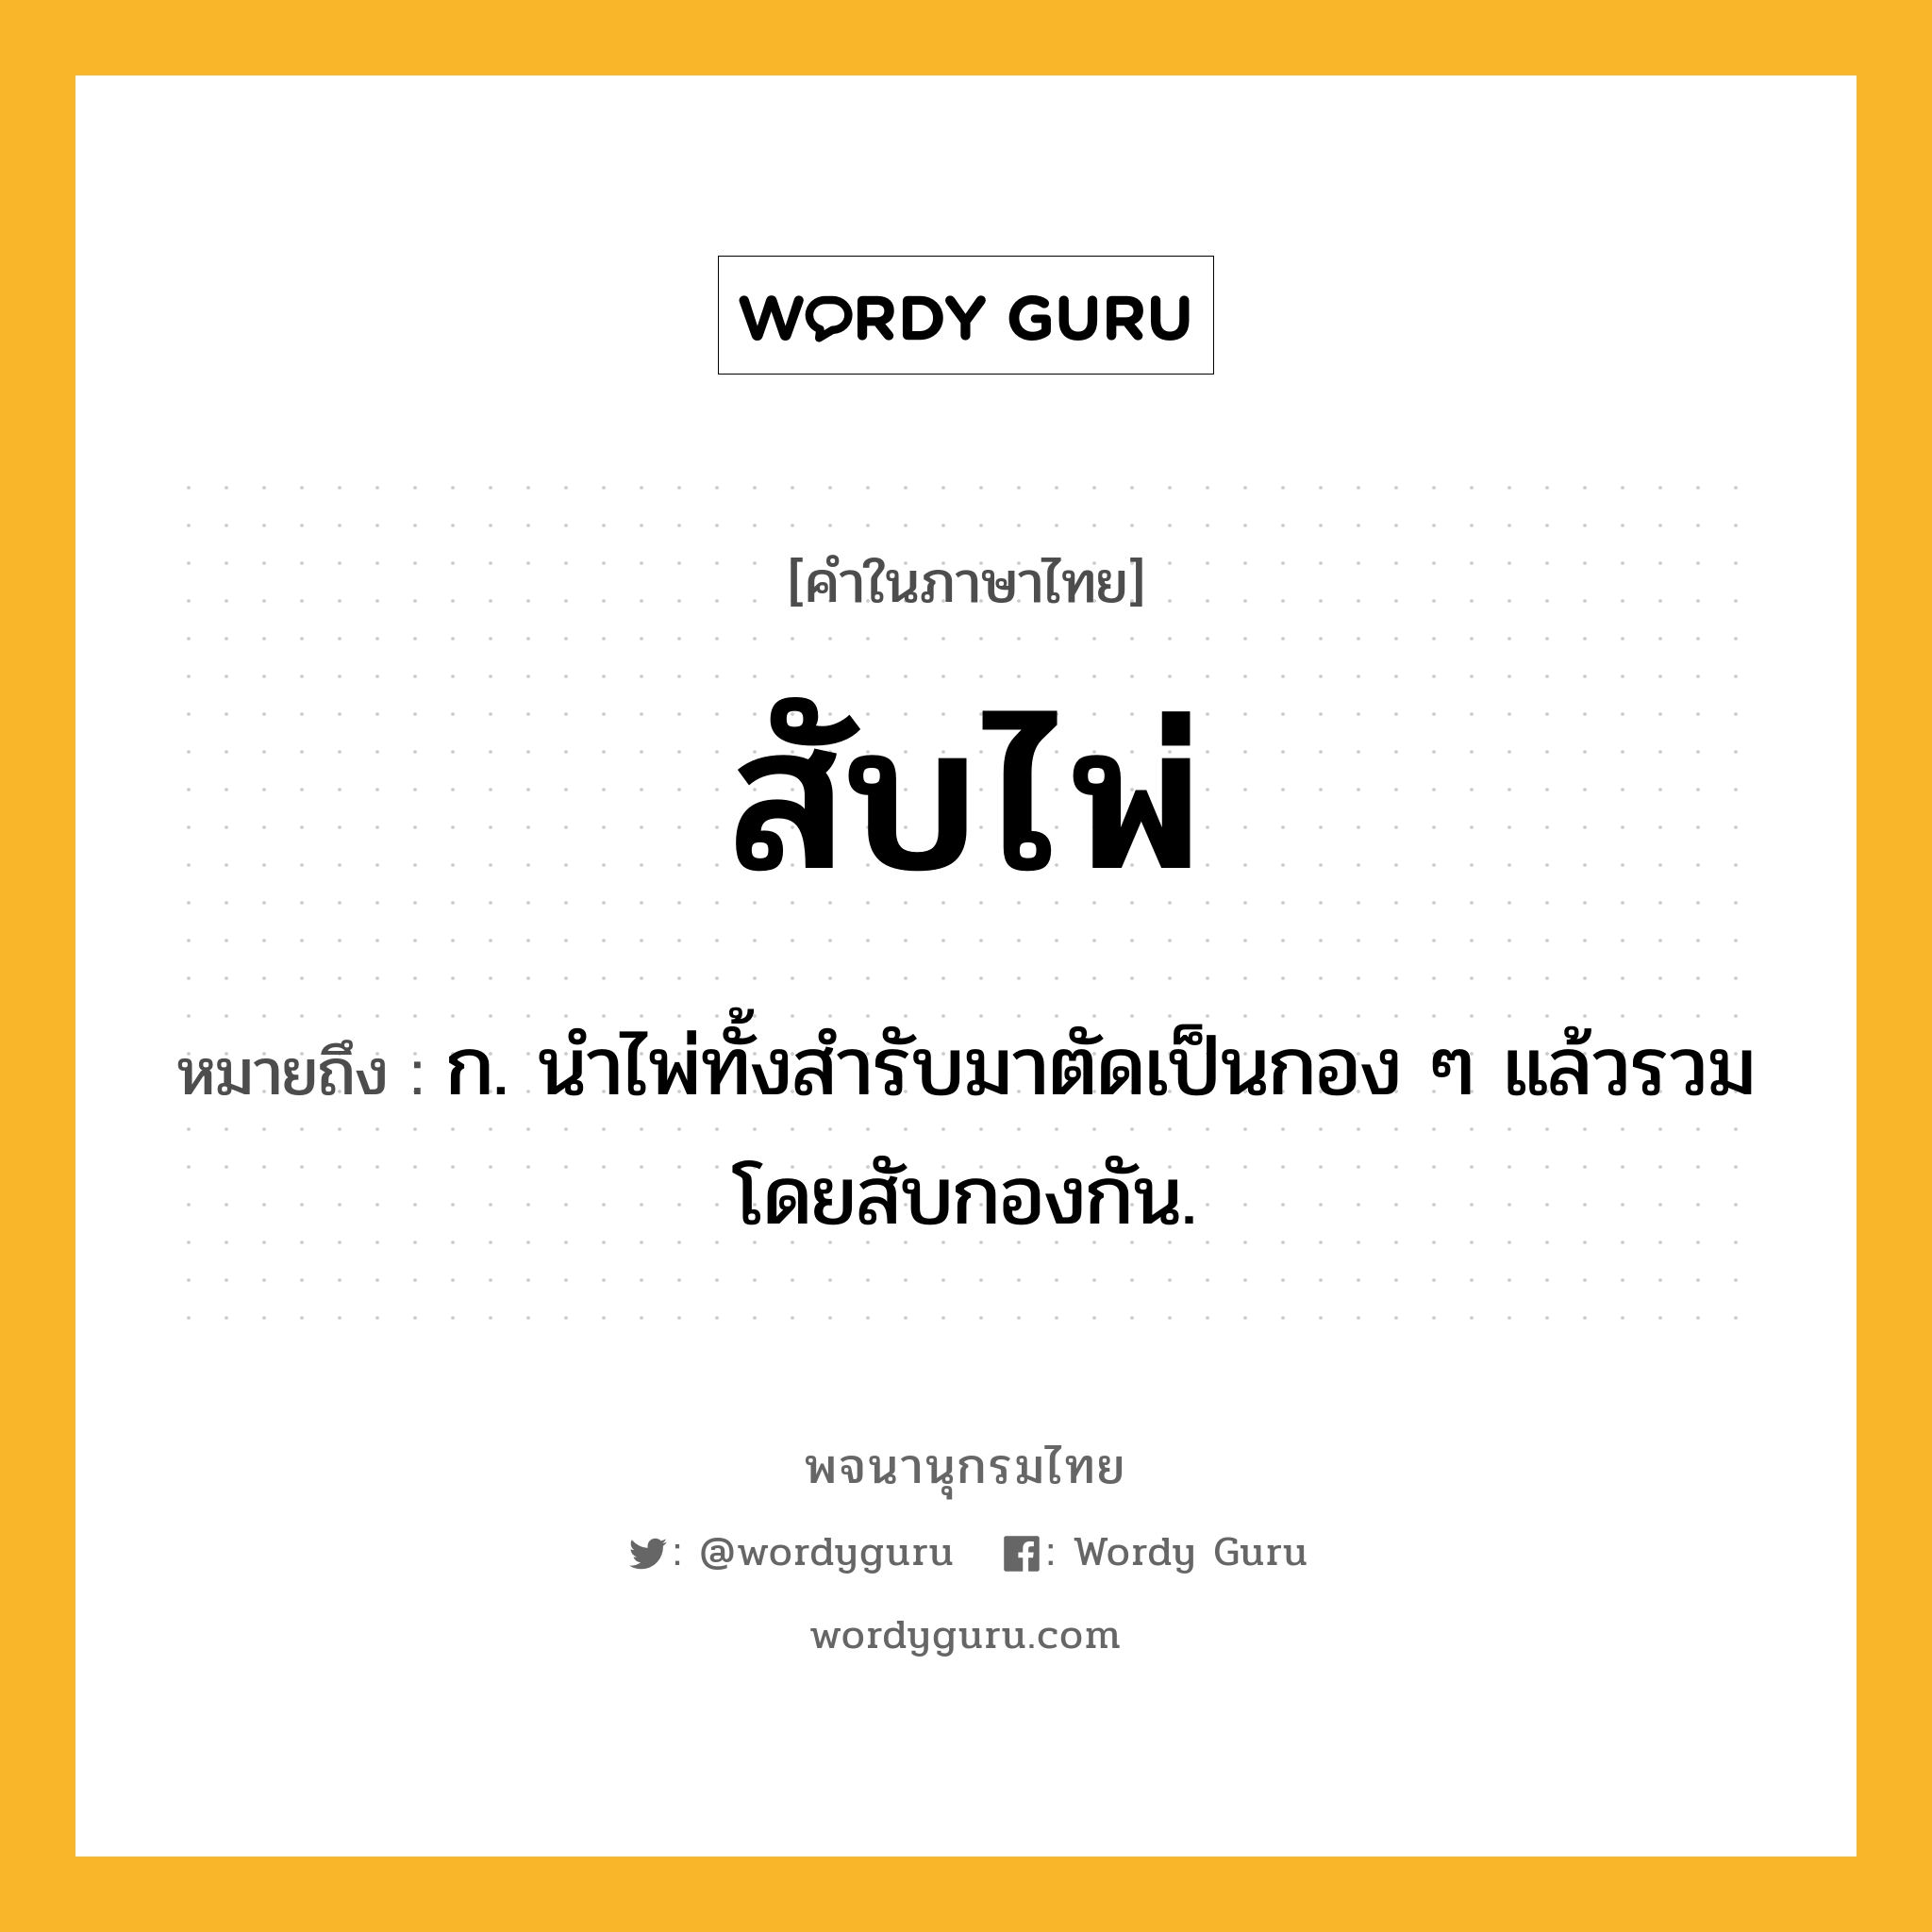 สับไพ่ ความหมาย หมายถึงอะไร?, คำในภาษาไทย สับไพ่ หมายถึง ก. นำไพ่ทั้งสำรับมาตัดเป็นกอง ๆ แล้วรวมโดยสับกองกัน.